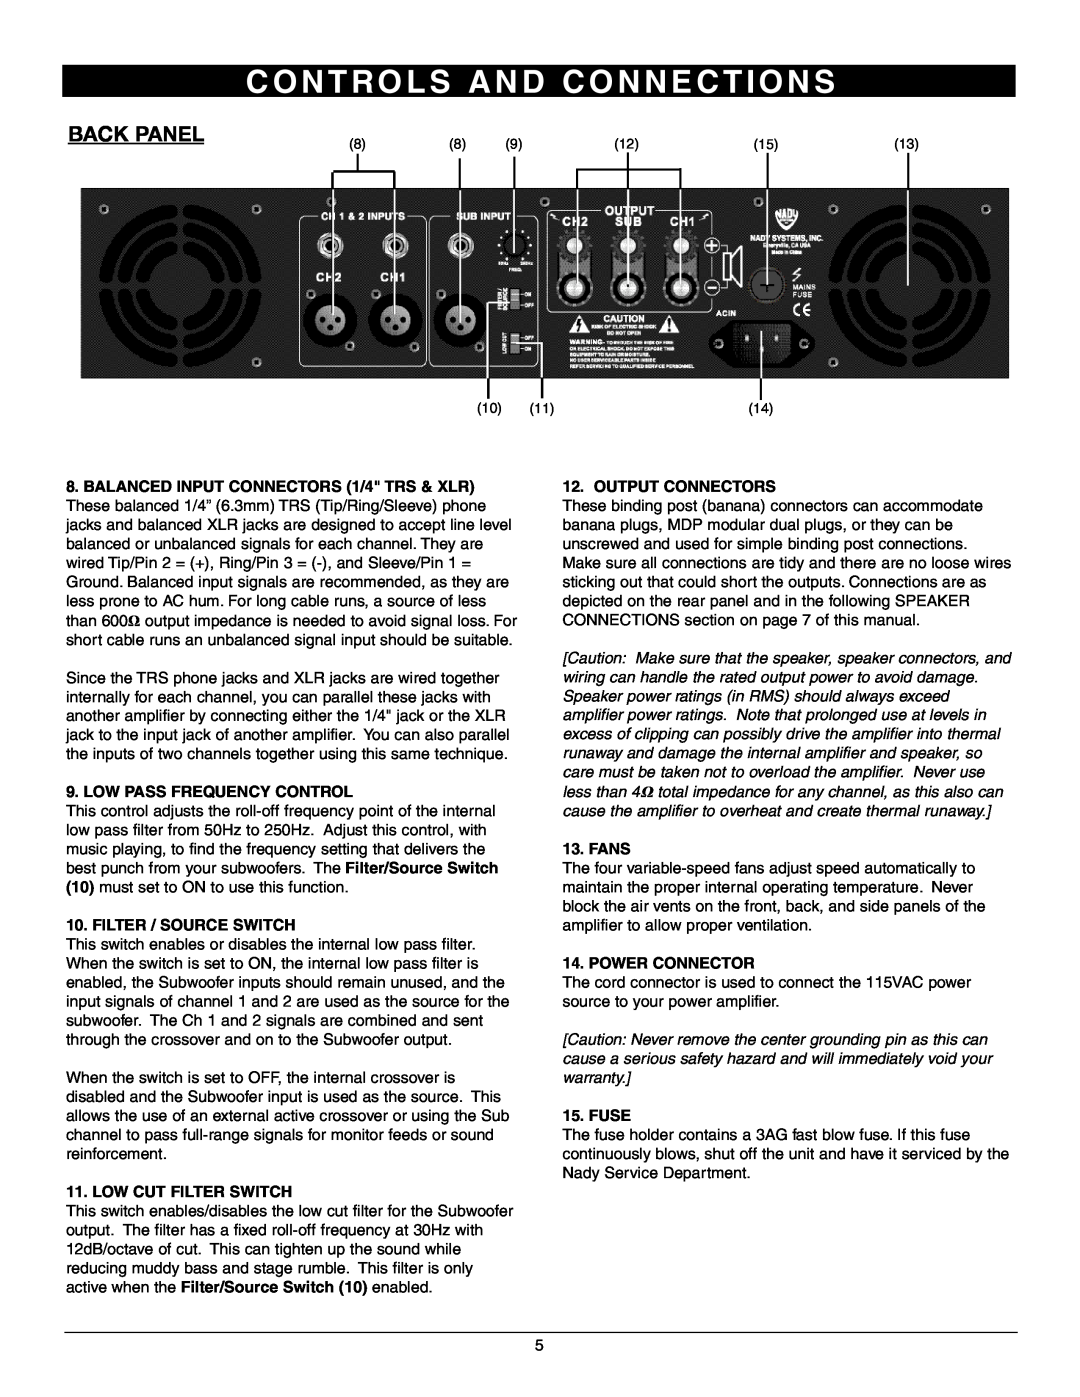 Nady Systems 3WA1700 Back Panel, C O N T R O L S A N D C O N N E C T I O N S, Low Pass Frequency Control, Fans, Fuse 